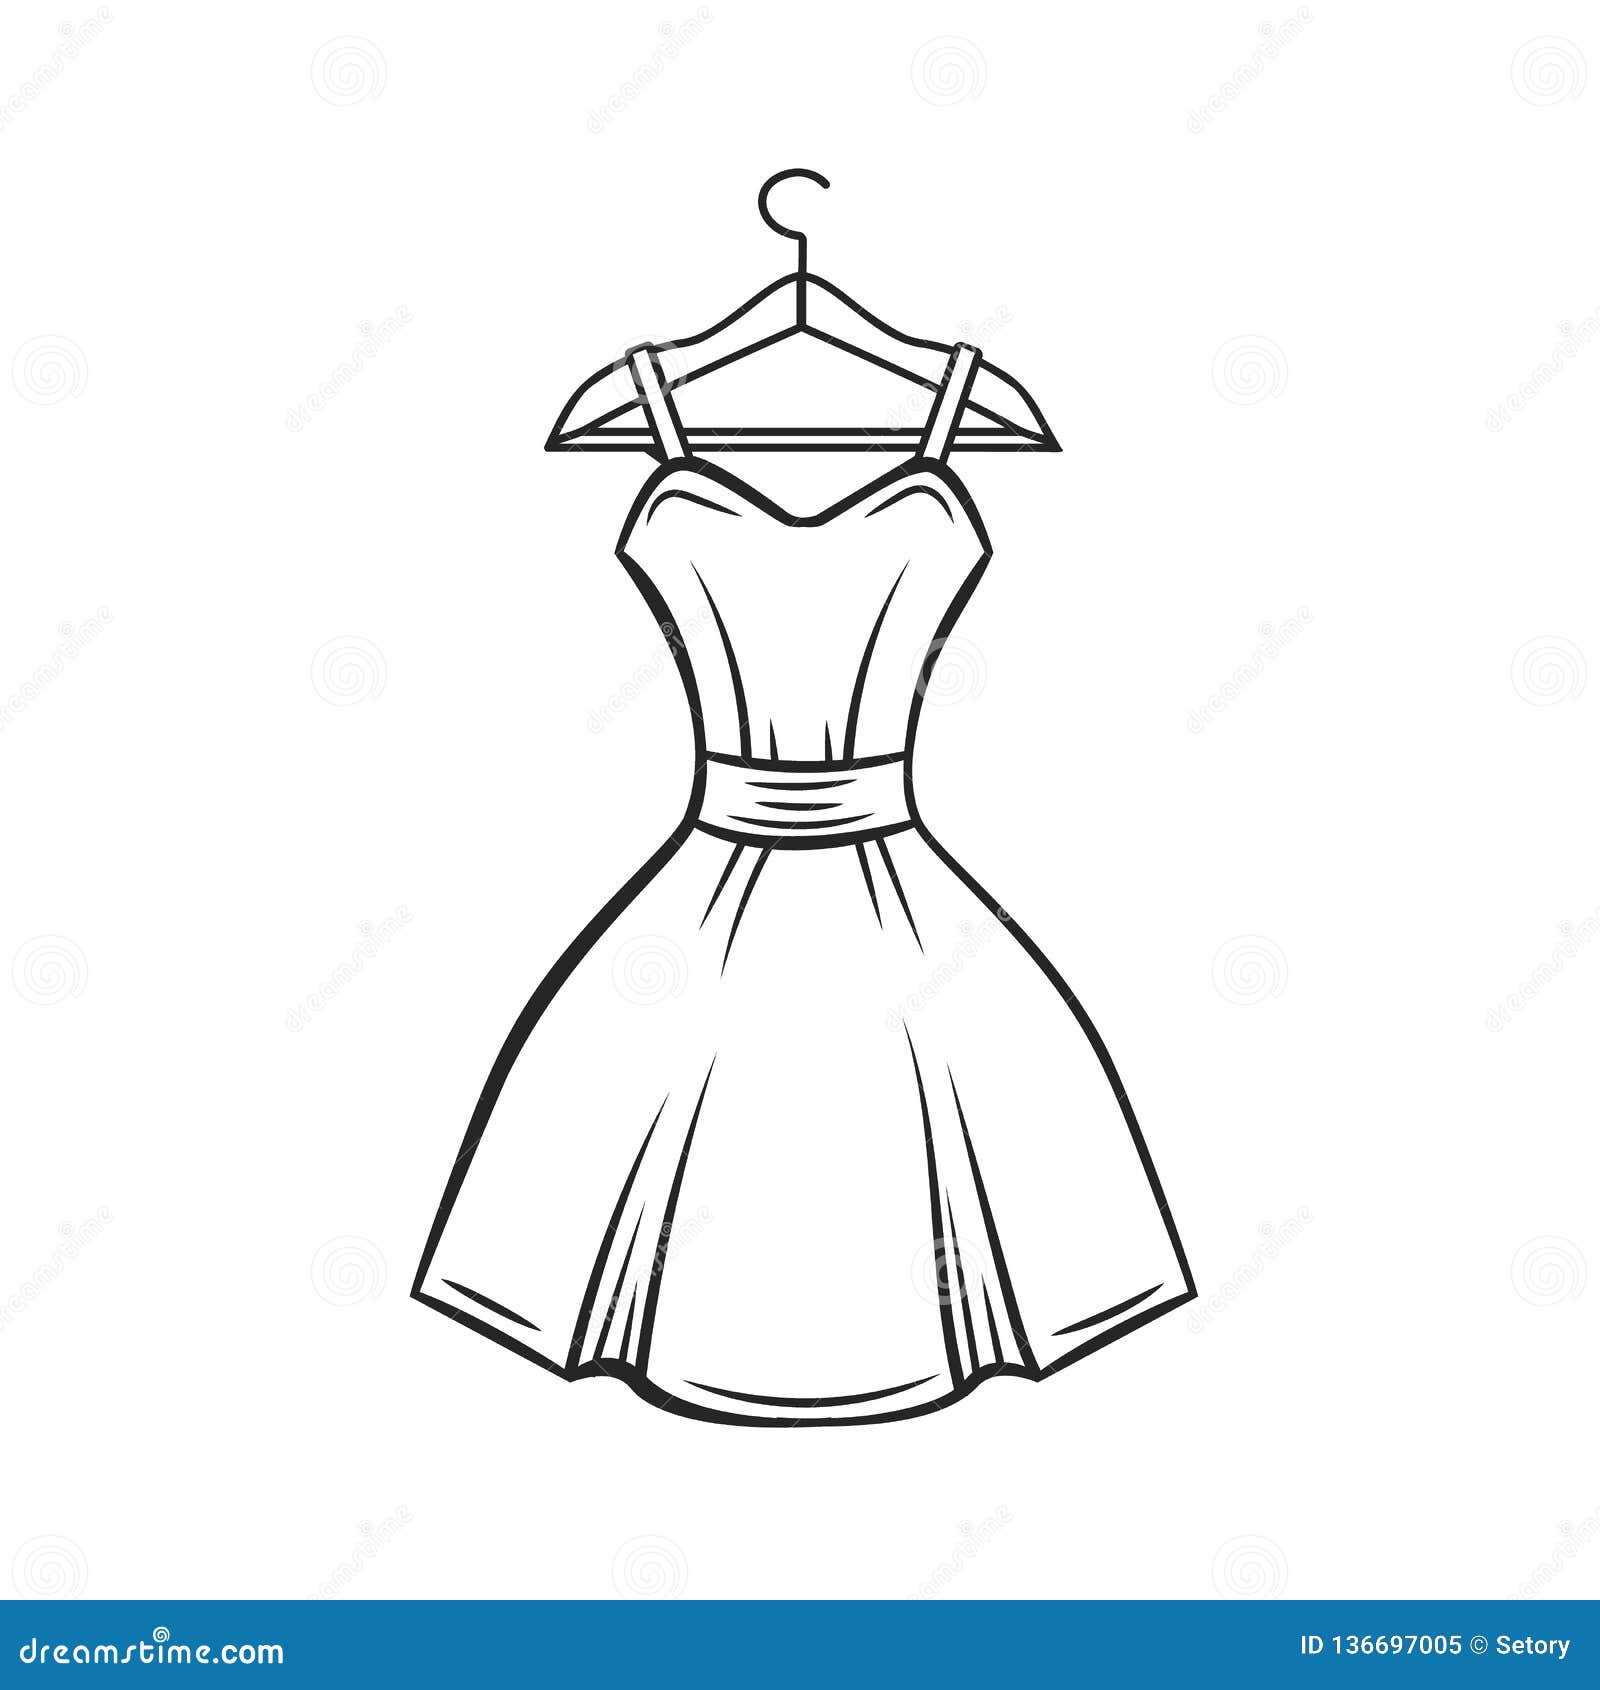 Dress hanger, outline stock vector. Illustration of isolated - 136697005